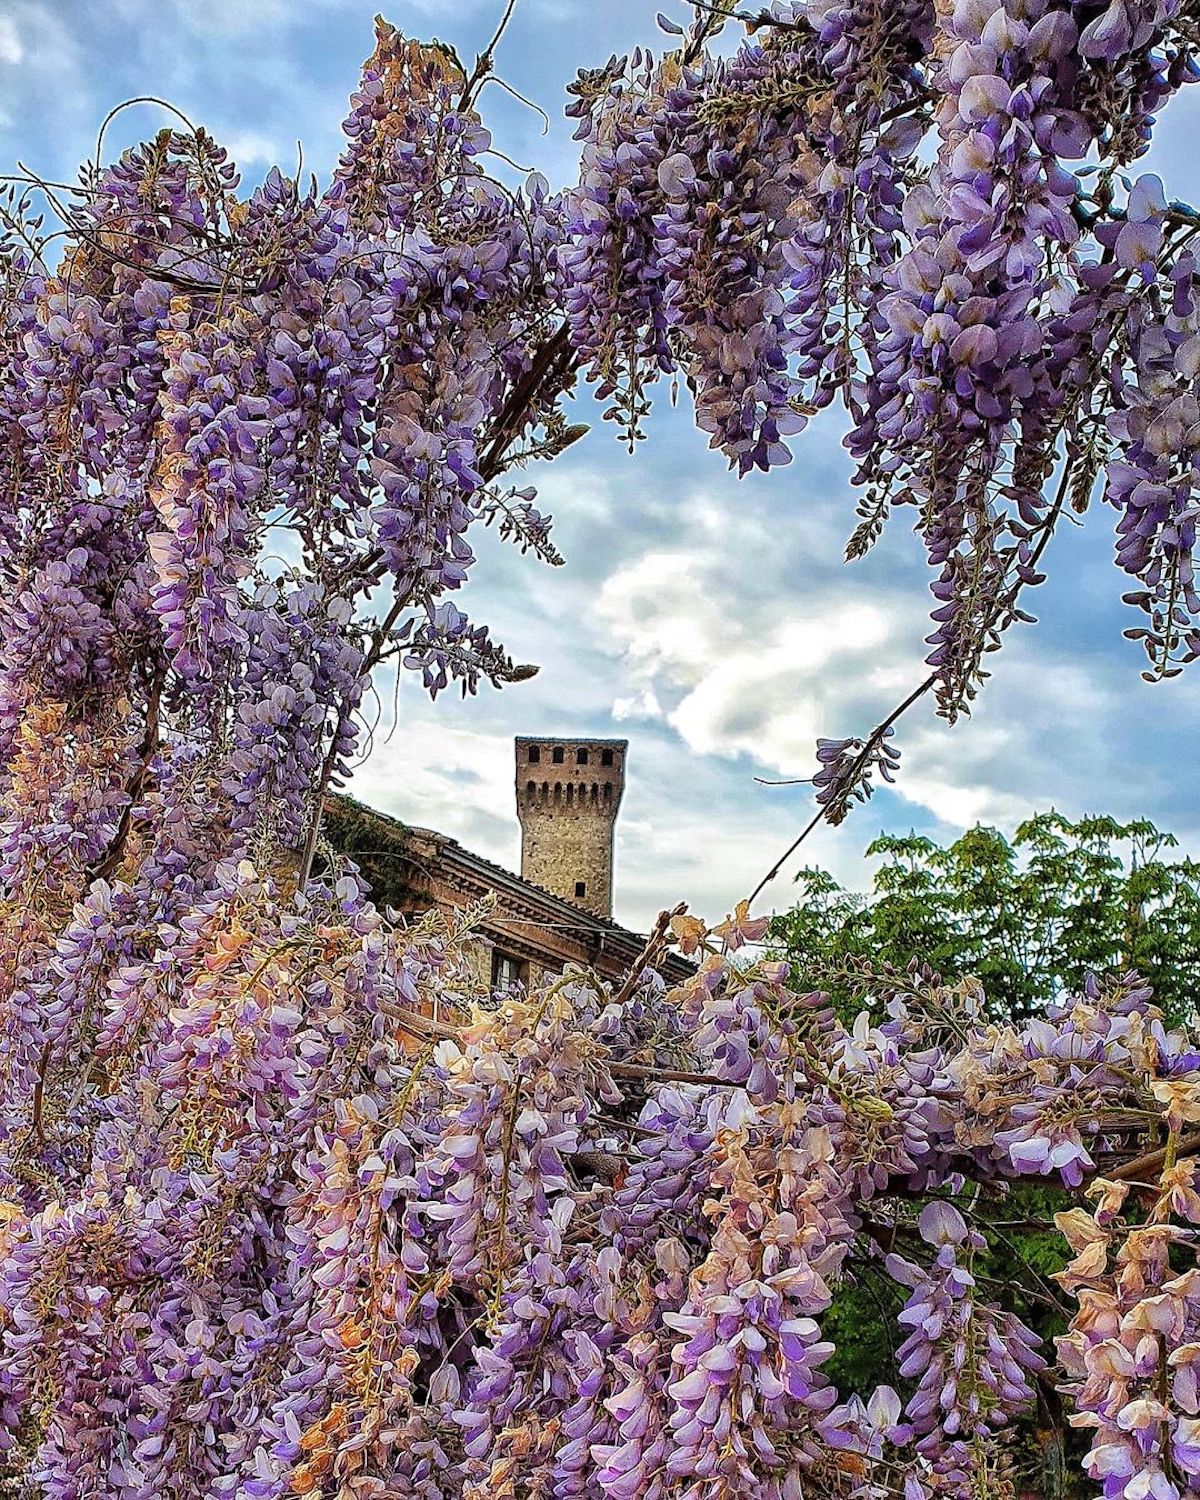 Vignola (MO), Glicine in fiore nei pressi della Rocca, ph. giardinodibeppe, CC-BY-NC-SA 3.0